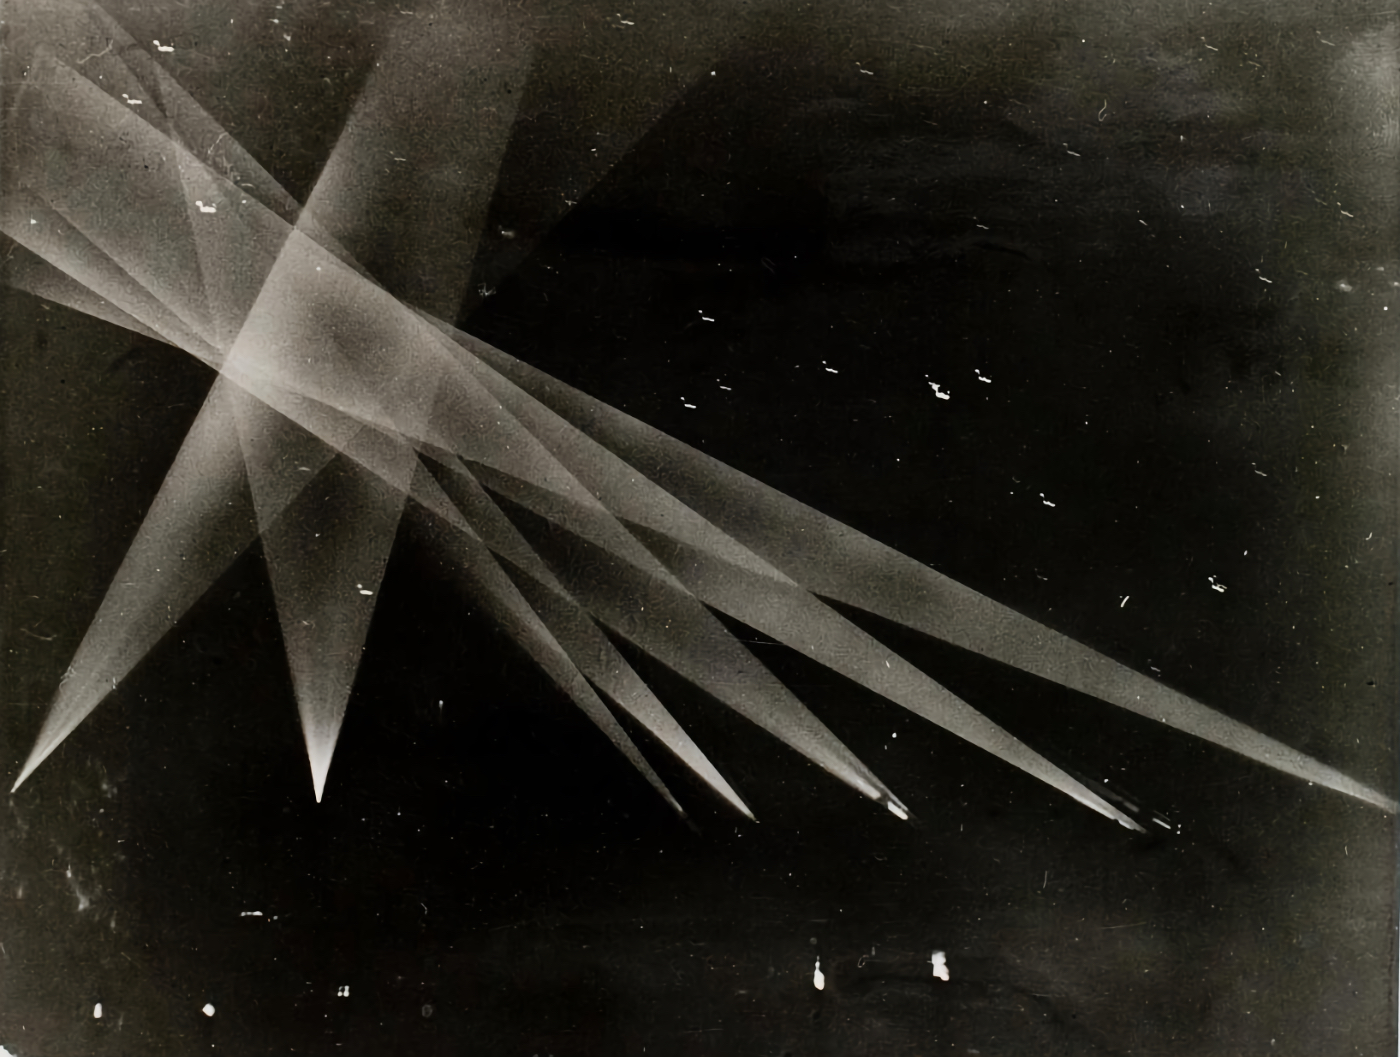 Uno de los objetos que sobrevolaron Los Ángeles el 25 de febrero de 1942, iluminado por los reflectores y entre detonaciones de proyectiles.